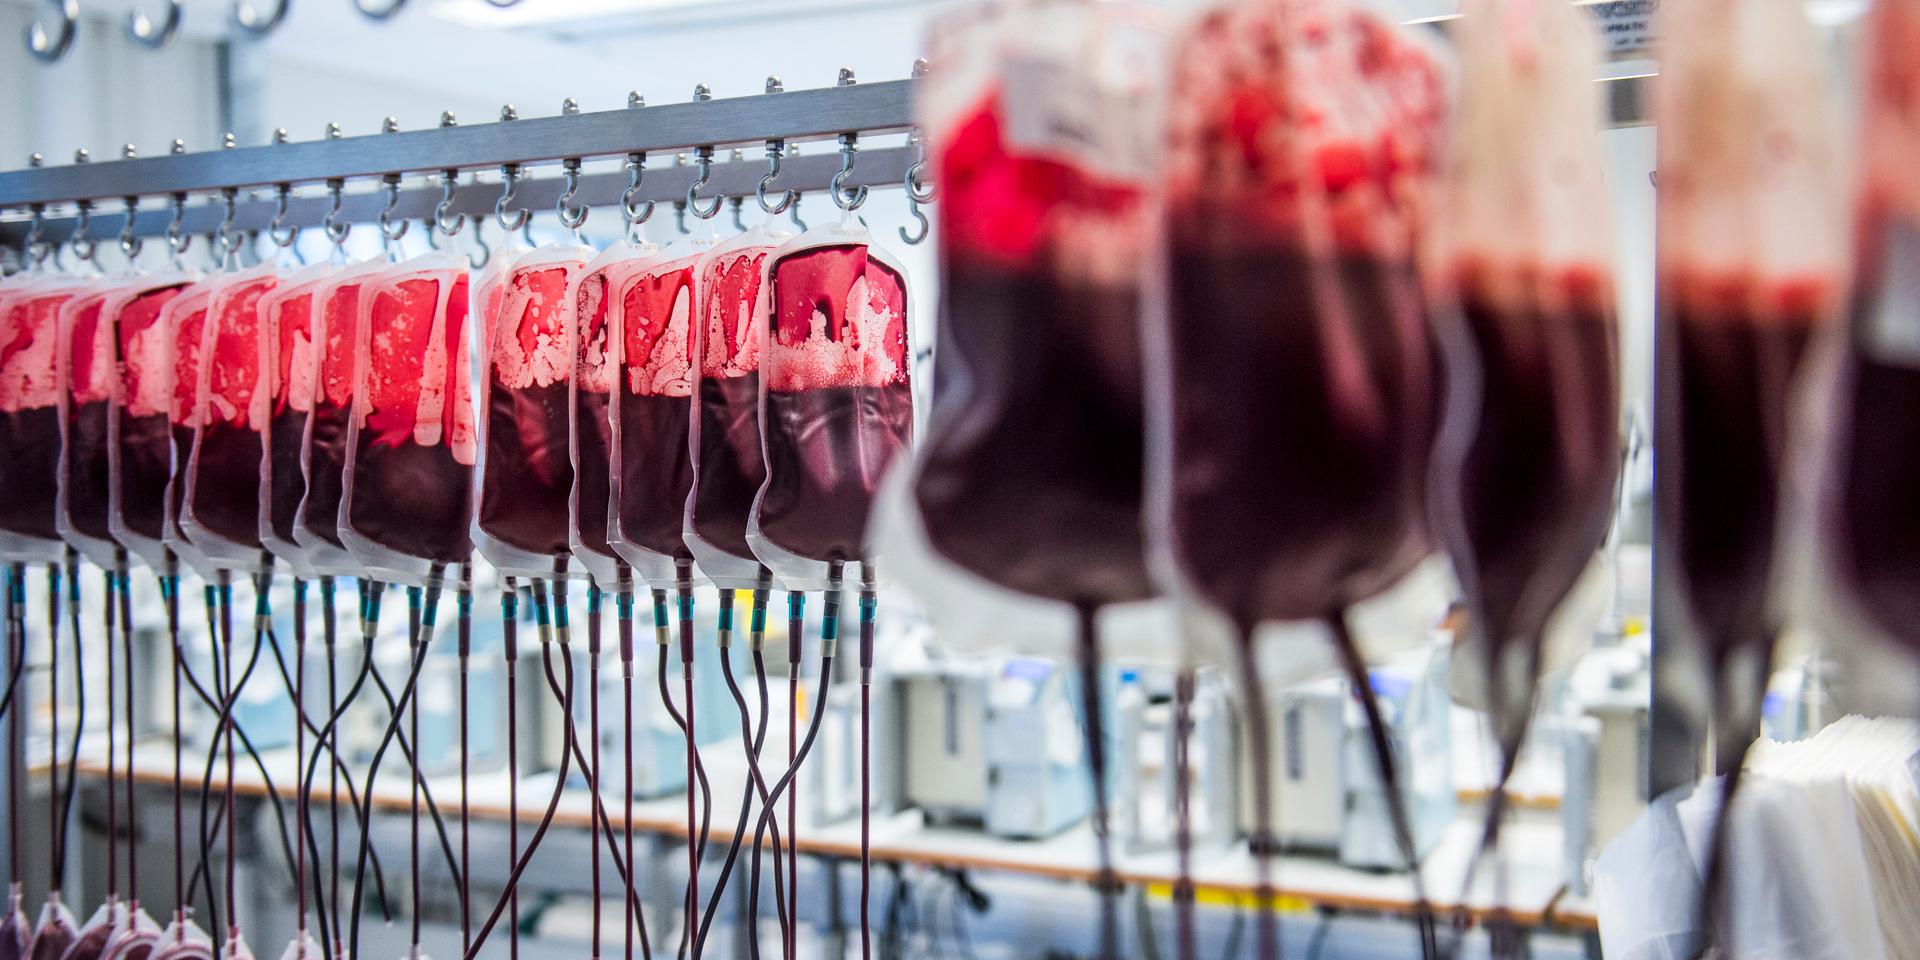 Blodet som användes vid behandling av bland annat blödarsjuka i Storbritannien på 70- och 80-talen köptes från tusentals donatorer och det var inte ovanligt att dessa ingick i högriskgrupp för att bära på HIV eller Hepatit C.